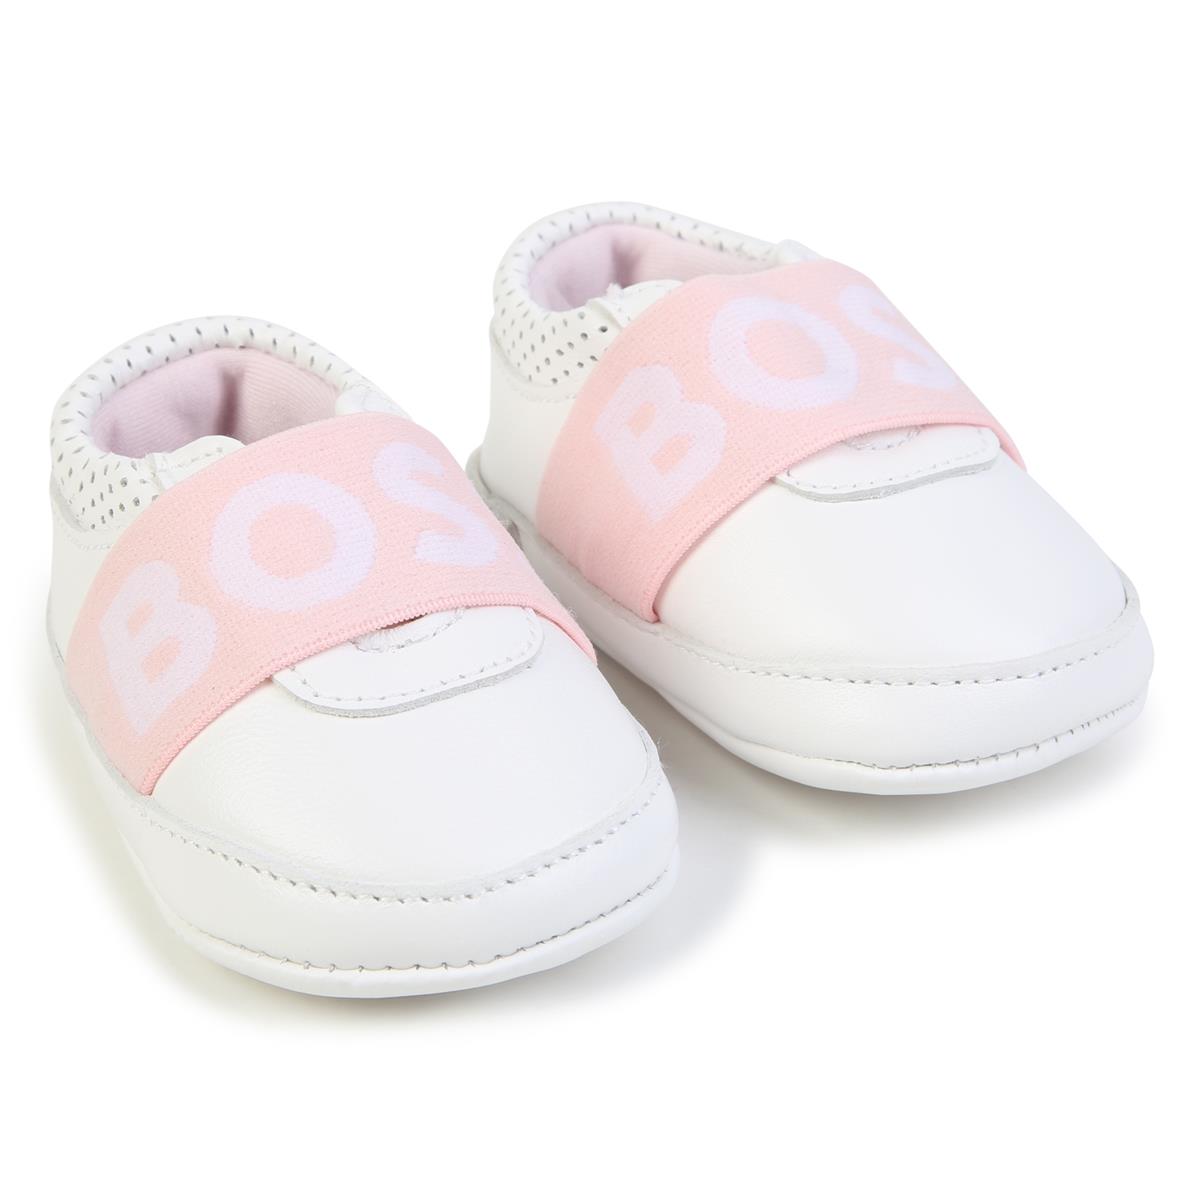 Baby Girls White Flat Shoes